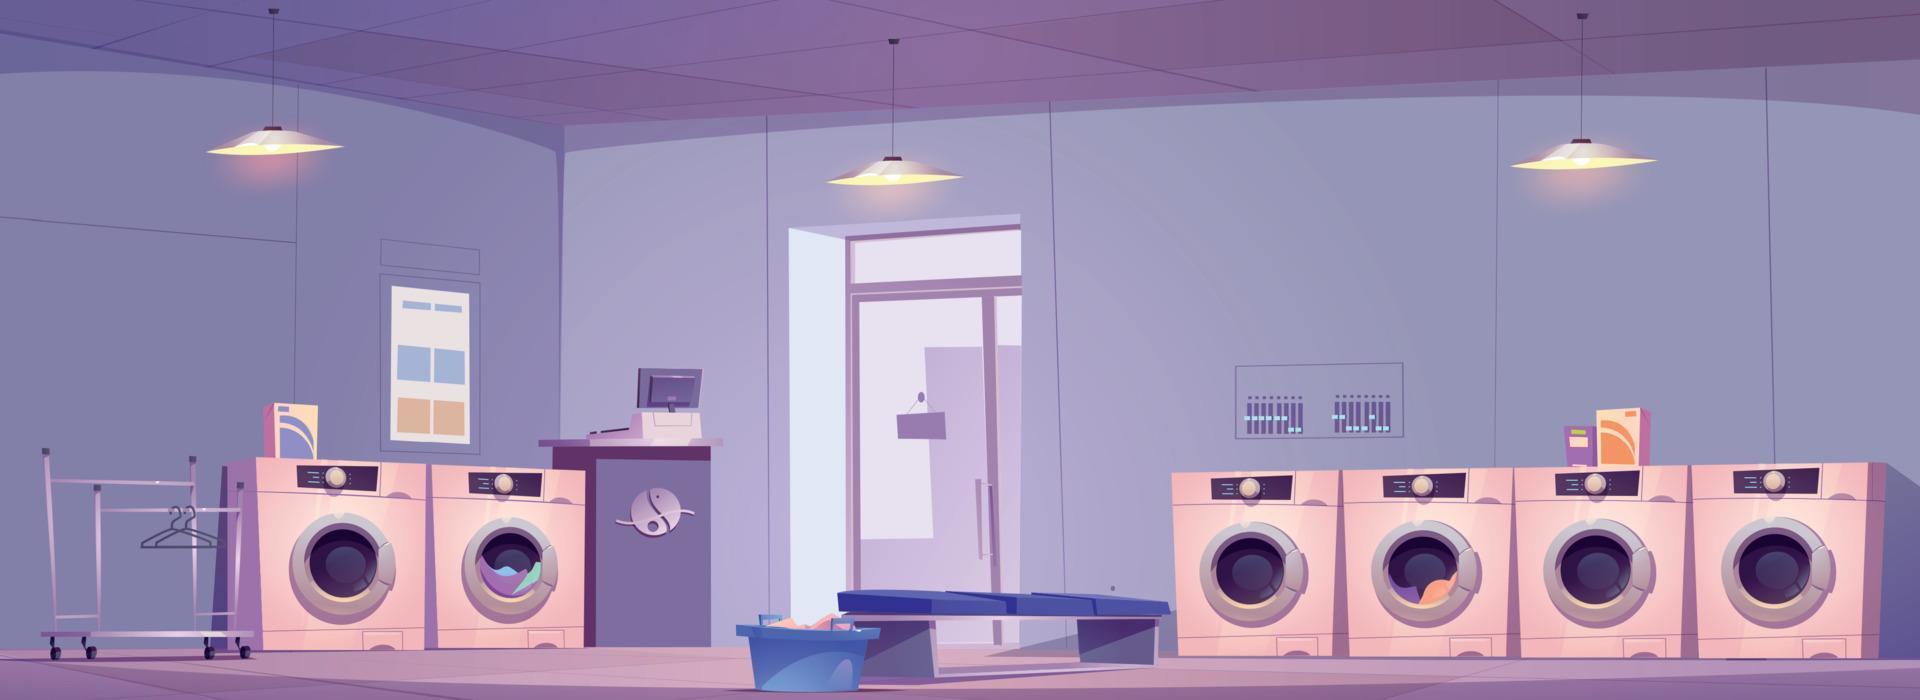 público lavandería habitación interior diseño vector